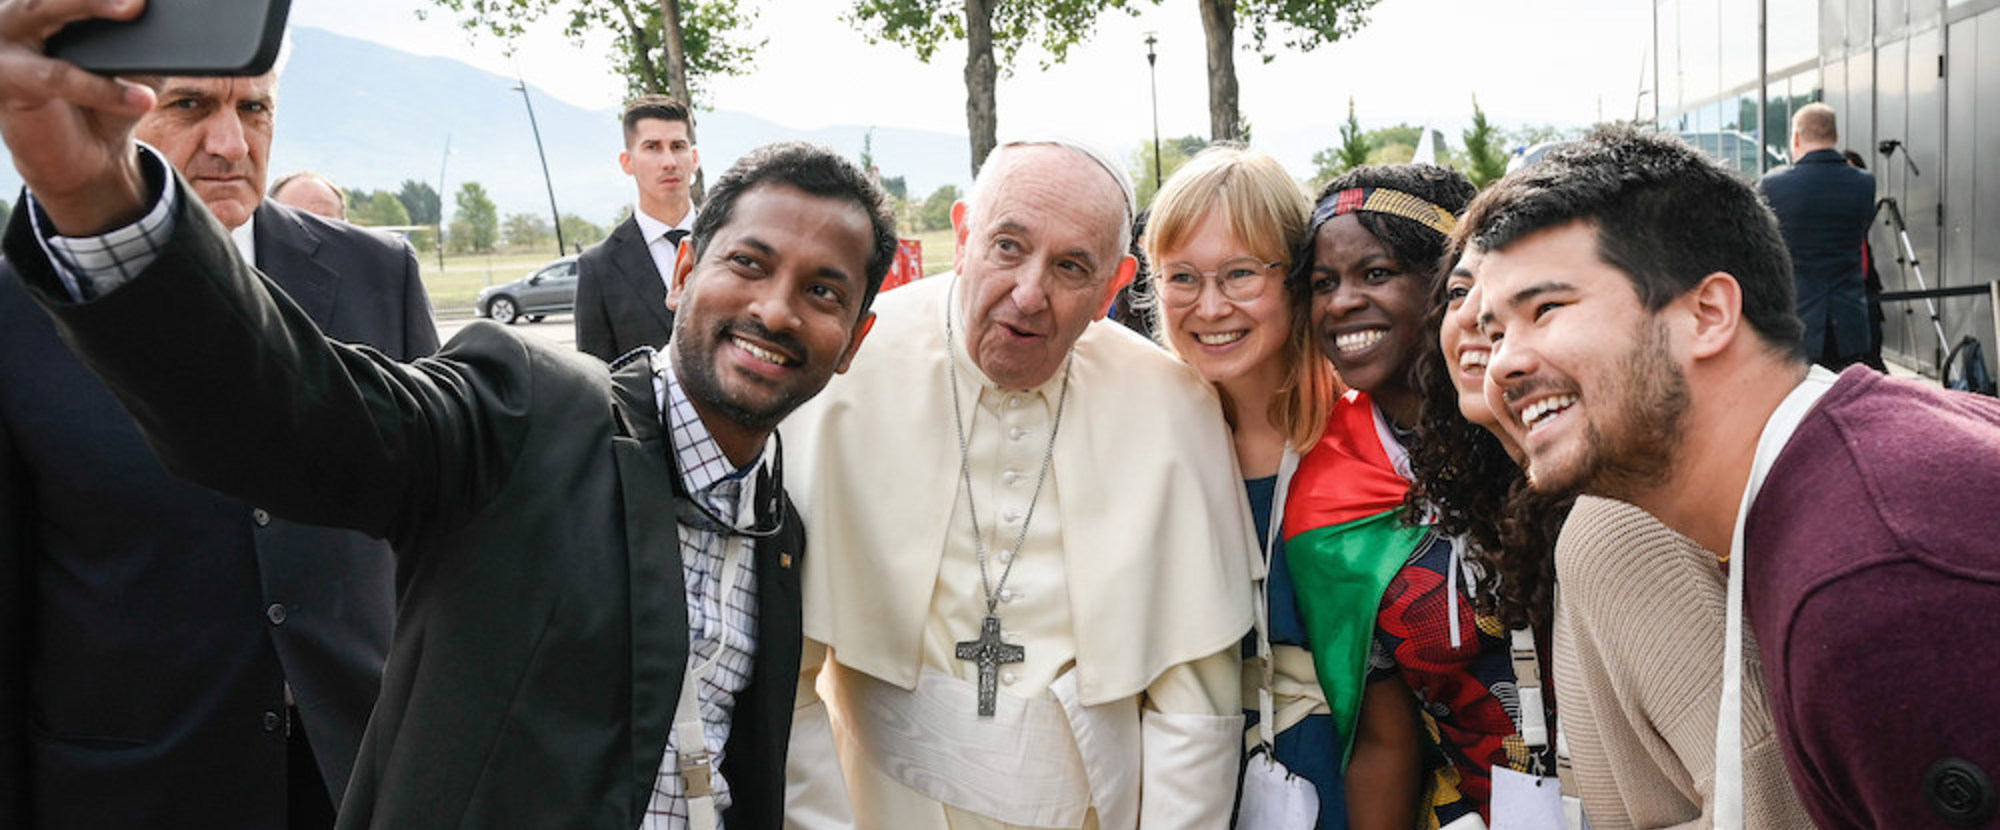 Papst Franziskus posiert für ein Selfie bei einem Treffen mit Teilnehmern der Initiative 'The Economy of Francesco' (dt. Die Ökonomie des heiligen Franz von Assisi) am 24. September 2022 in Assisi (Italien).